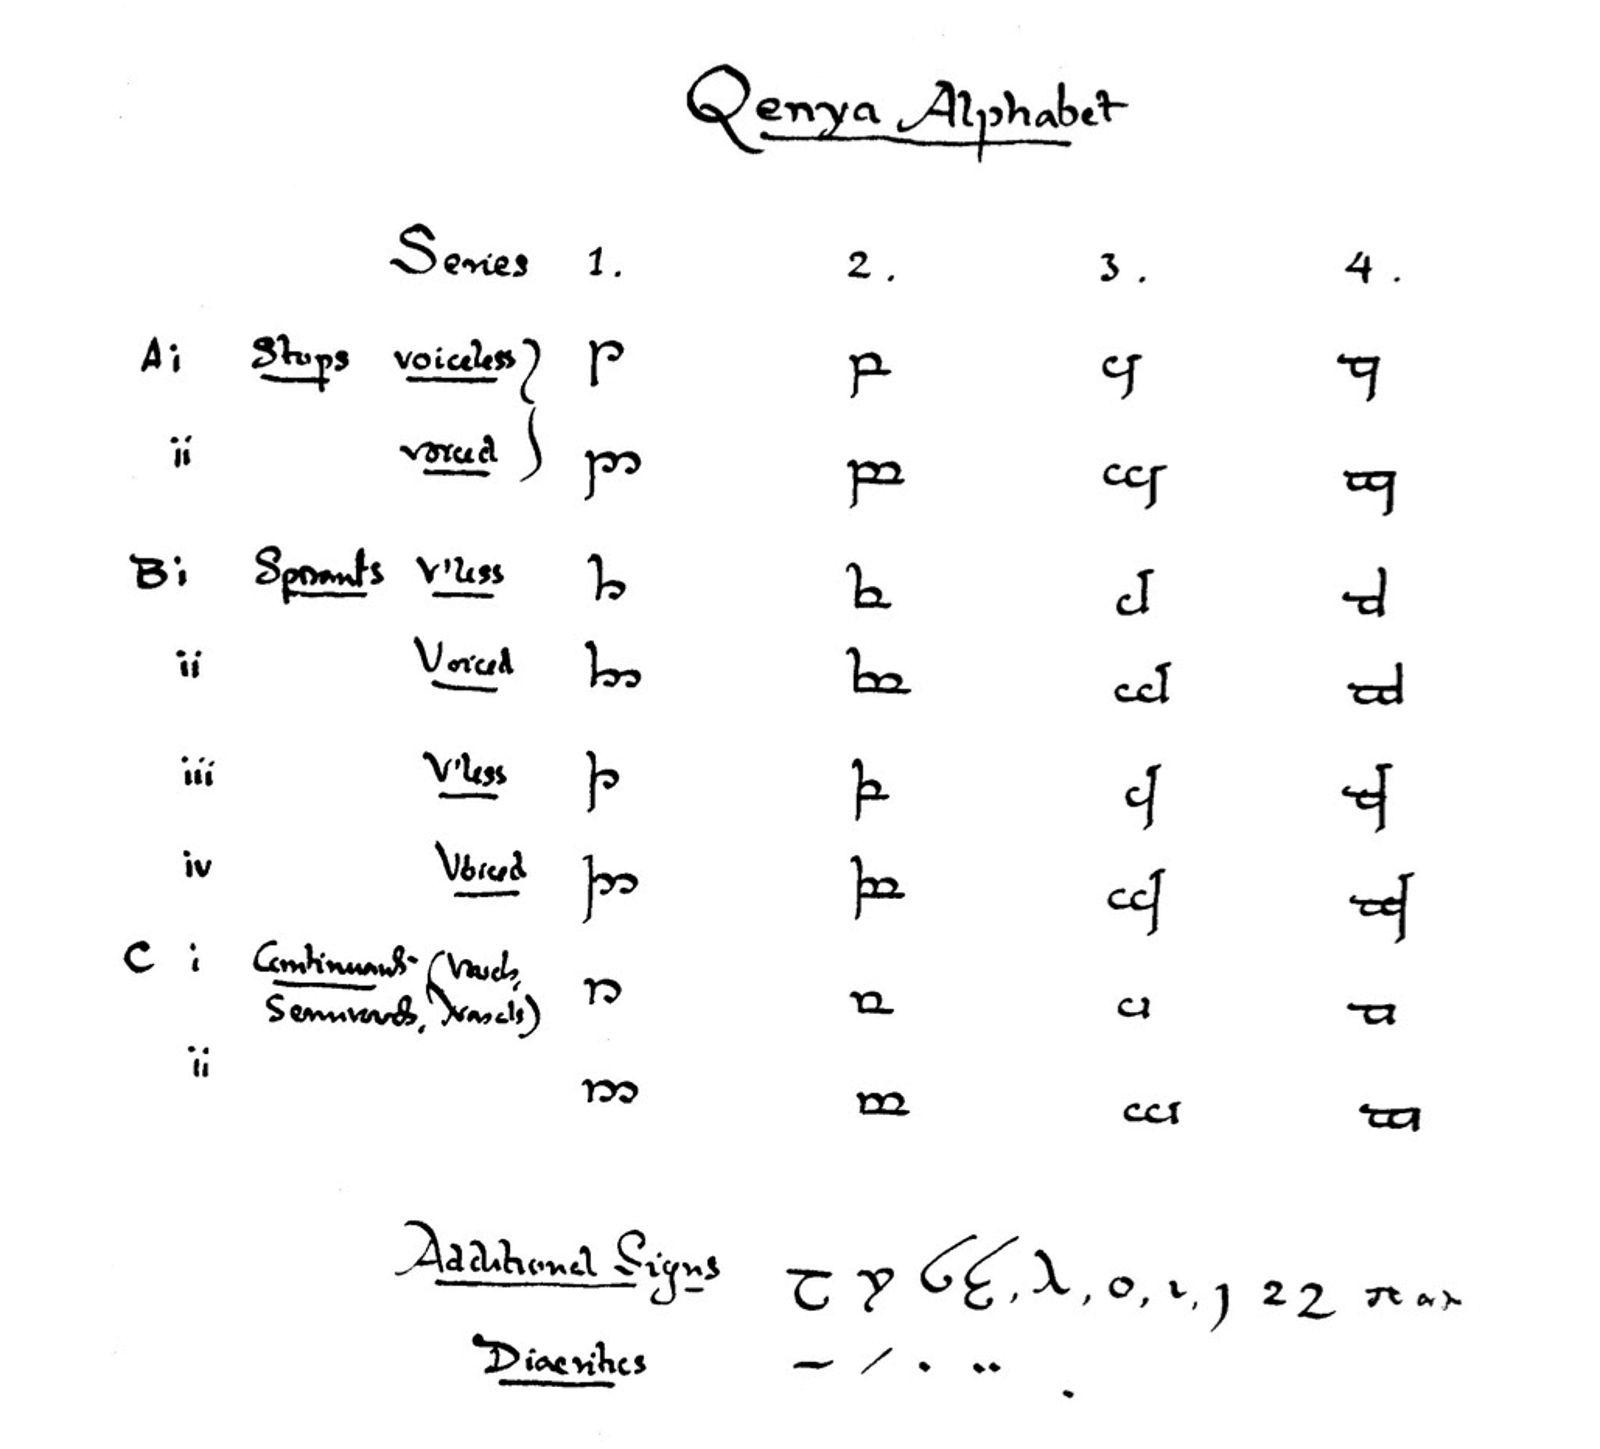 エルフ語が刻印された『ロード・オブ・ザ・リング』コラボのキーボード 